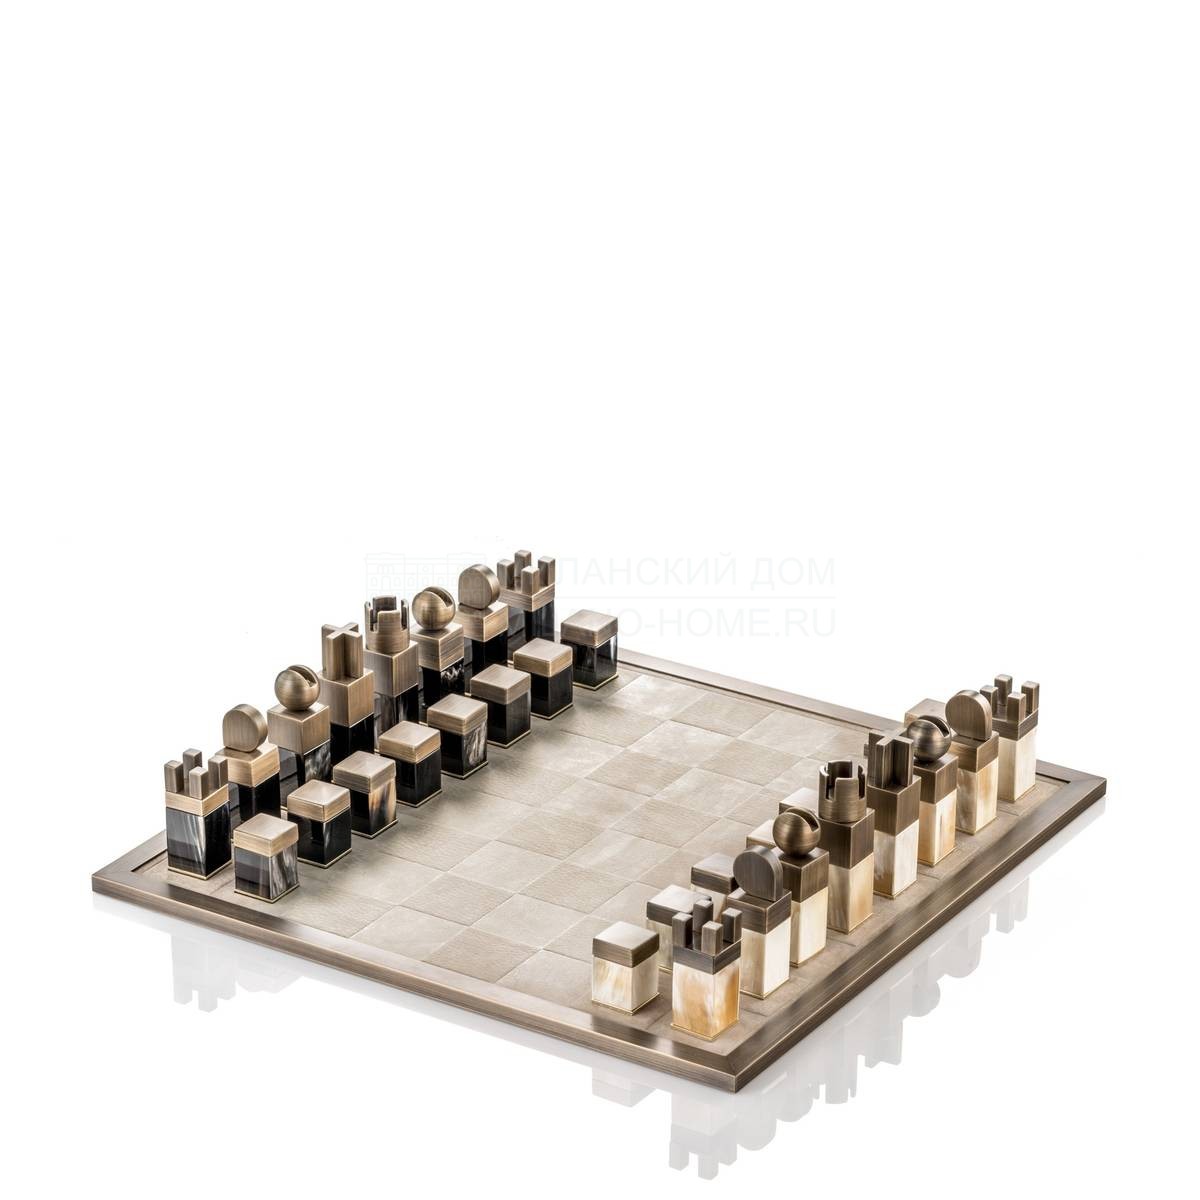 Шахматная доска  Trafalgar / art. 5121 из Италии фабрики ARCAHORN